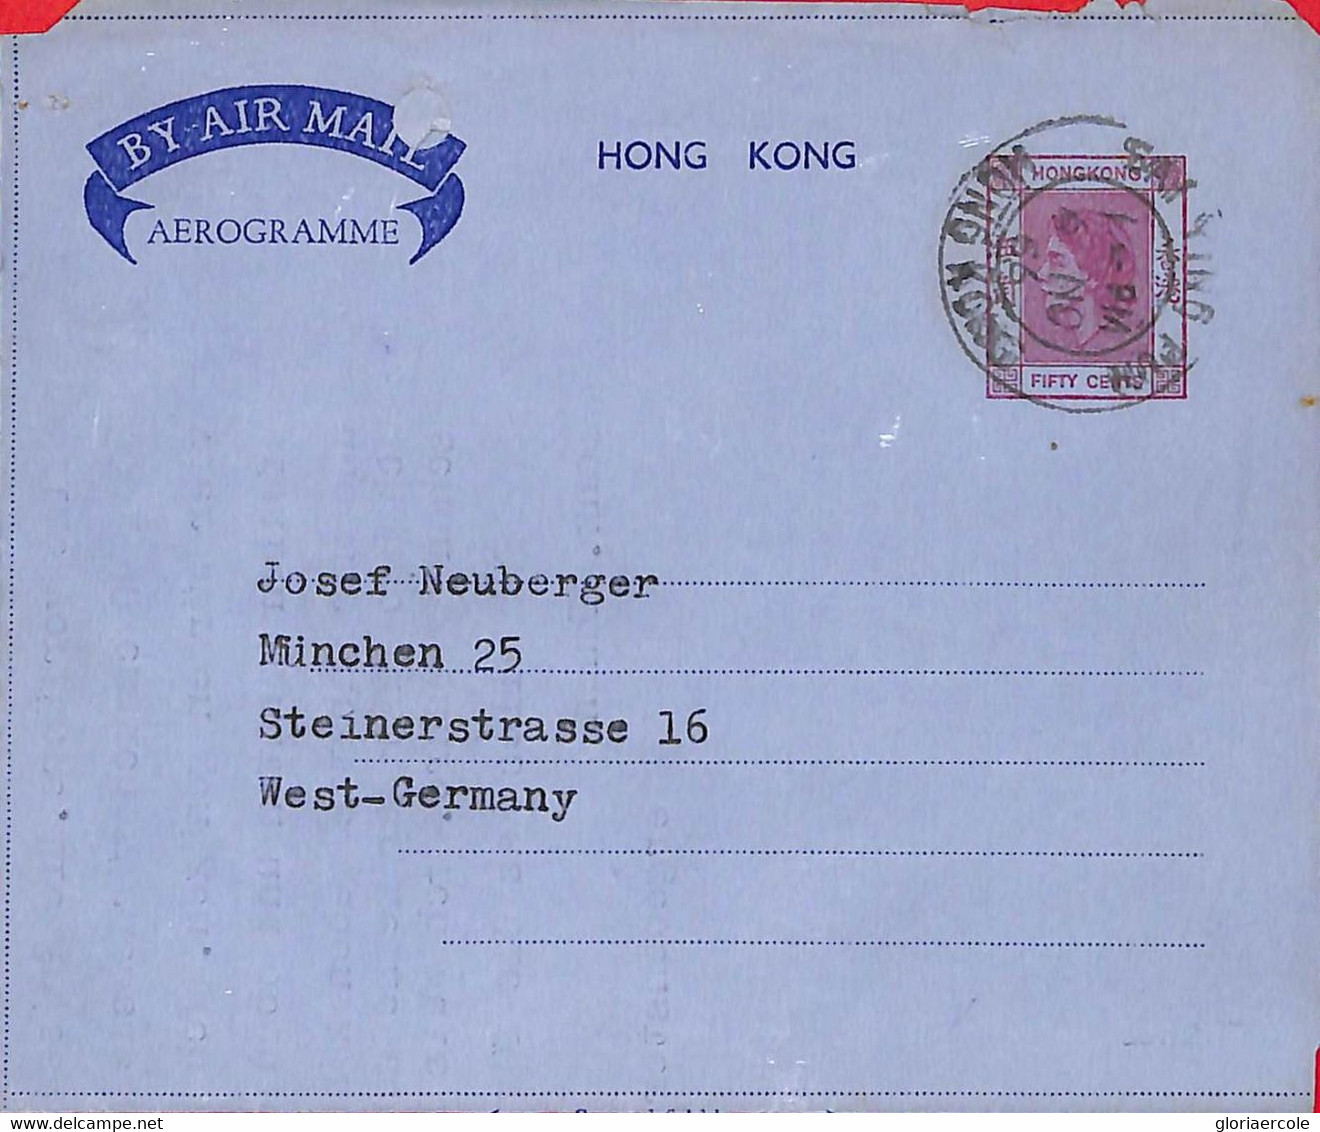 Aa6792 - HONG KONG - POSTAL HISTORY - Stationery AEROGRAMME From SAY YING PUN 1966 - Interi Postali